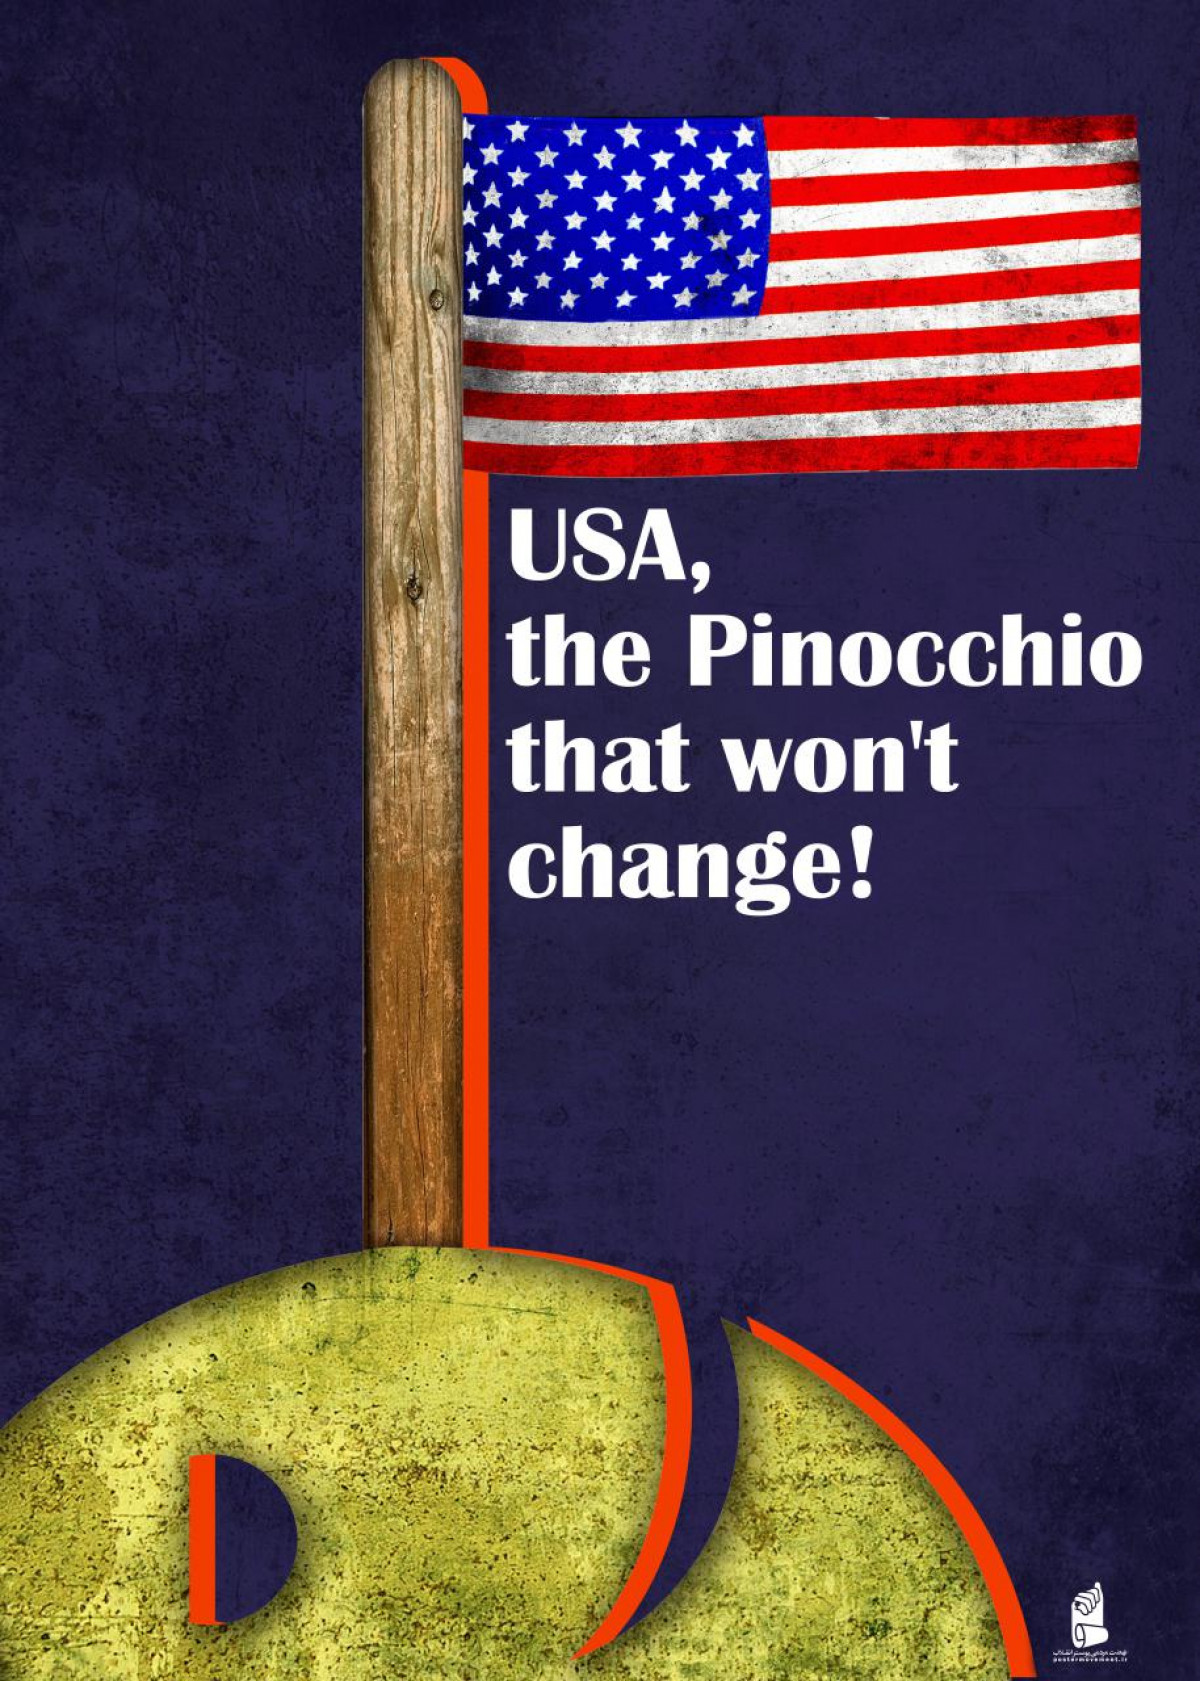 USA that won't the Pinocchio